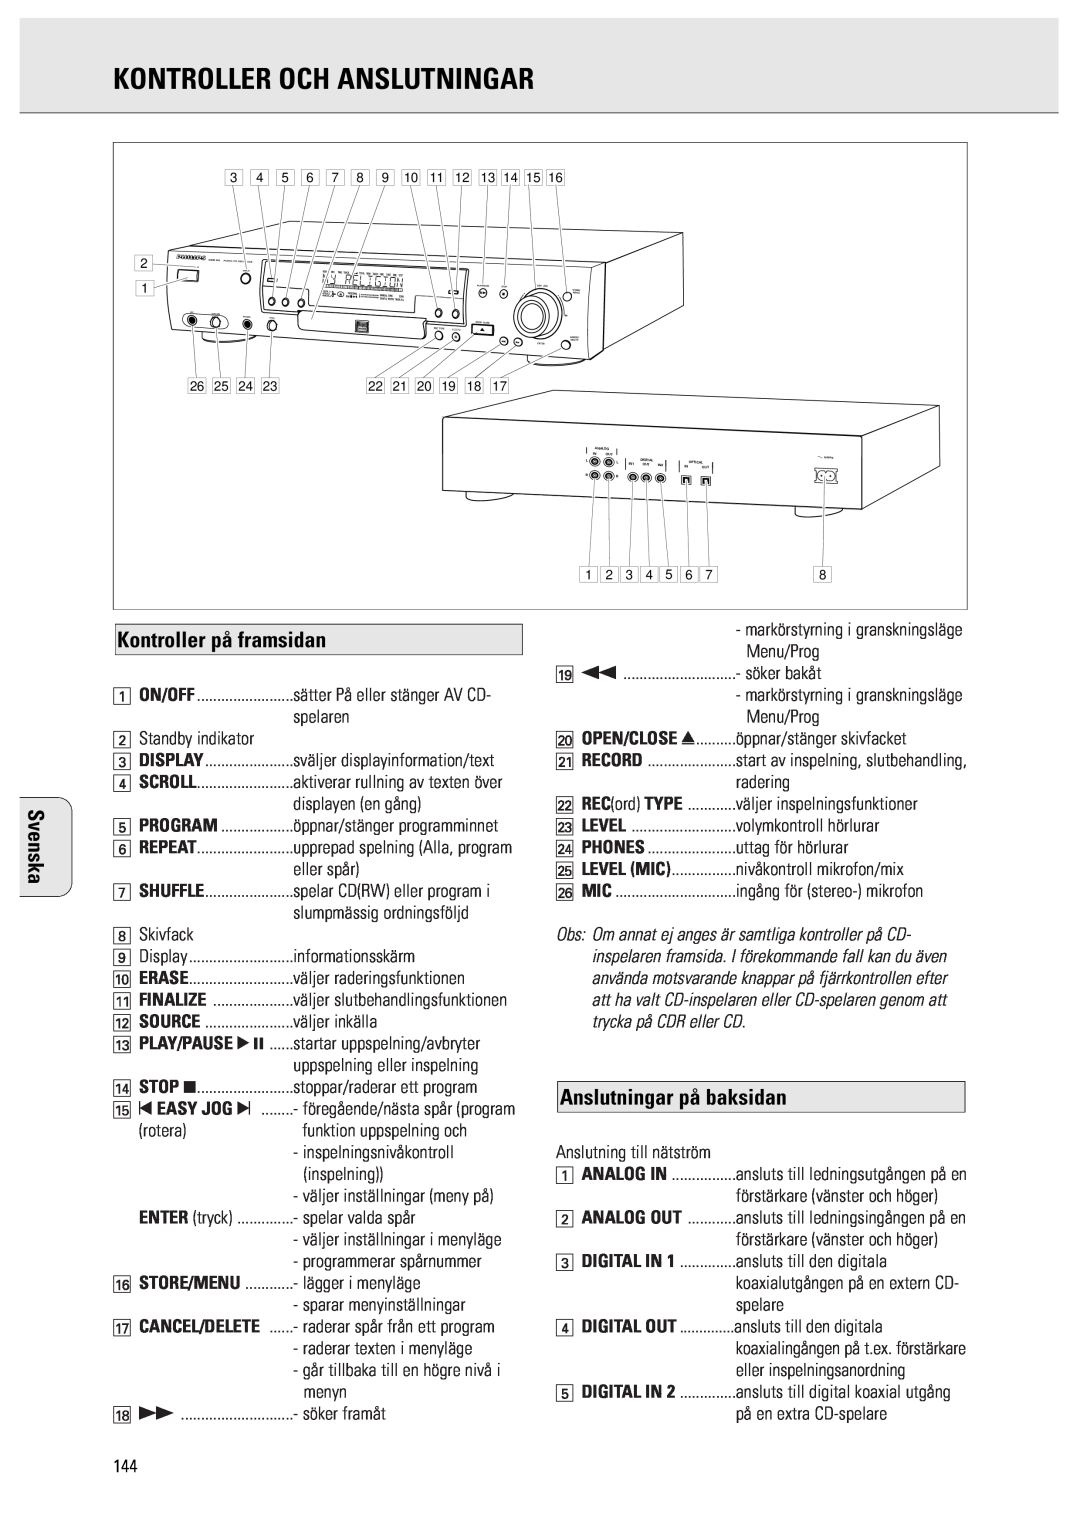 Philips CDR950/951 manual Kontroller Och Anslutningar, Kontroller på framsidan, Anslutningar på baksidan, 1 ON/OFF, Program 